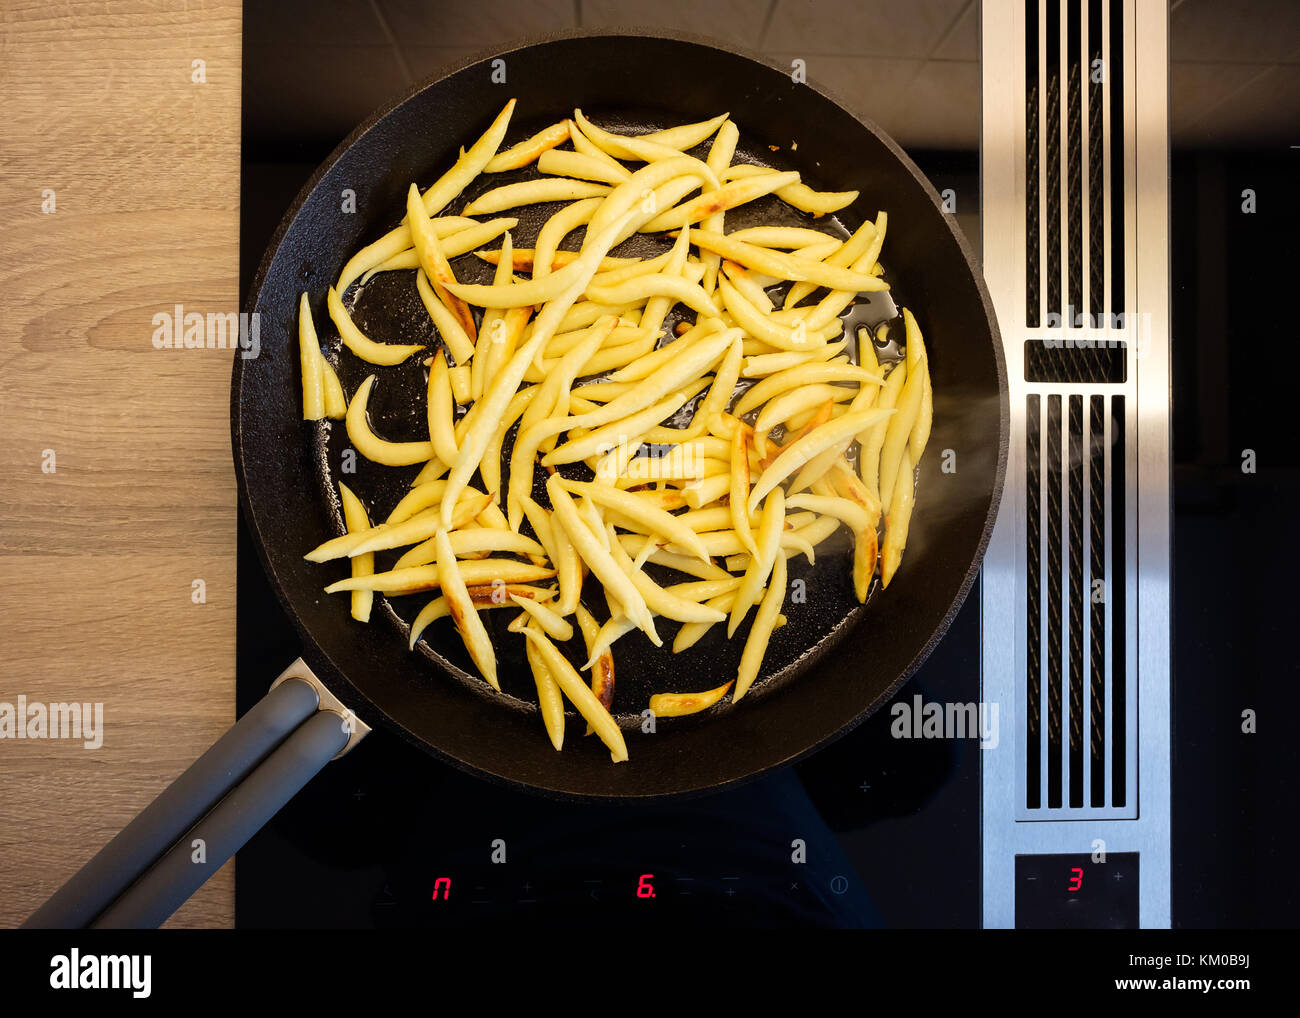 En forme de doigt boulettes de pommes de terre dans une poêle en fonte sur une cuisinière avec hotte aspirante Banque D'Images